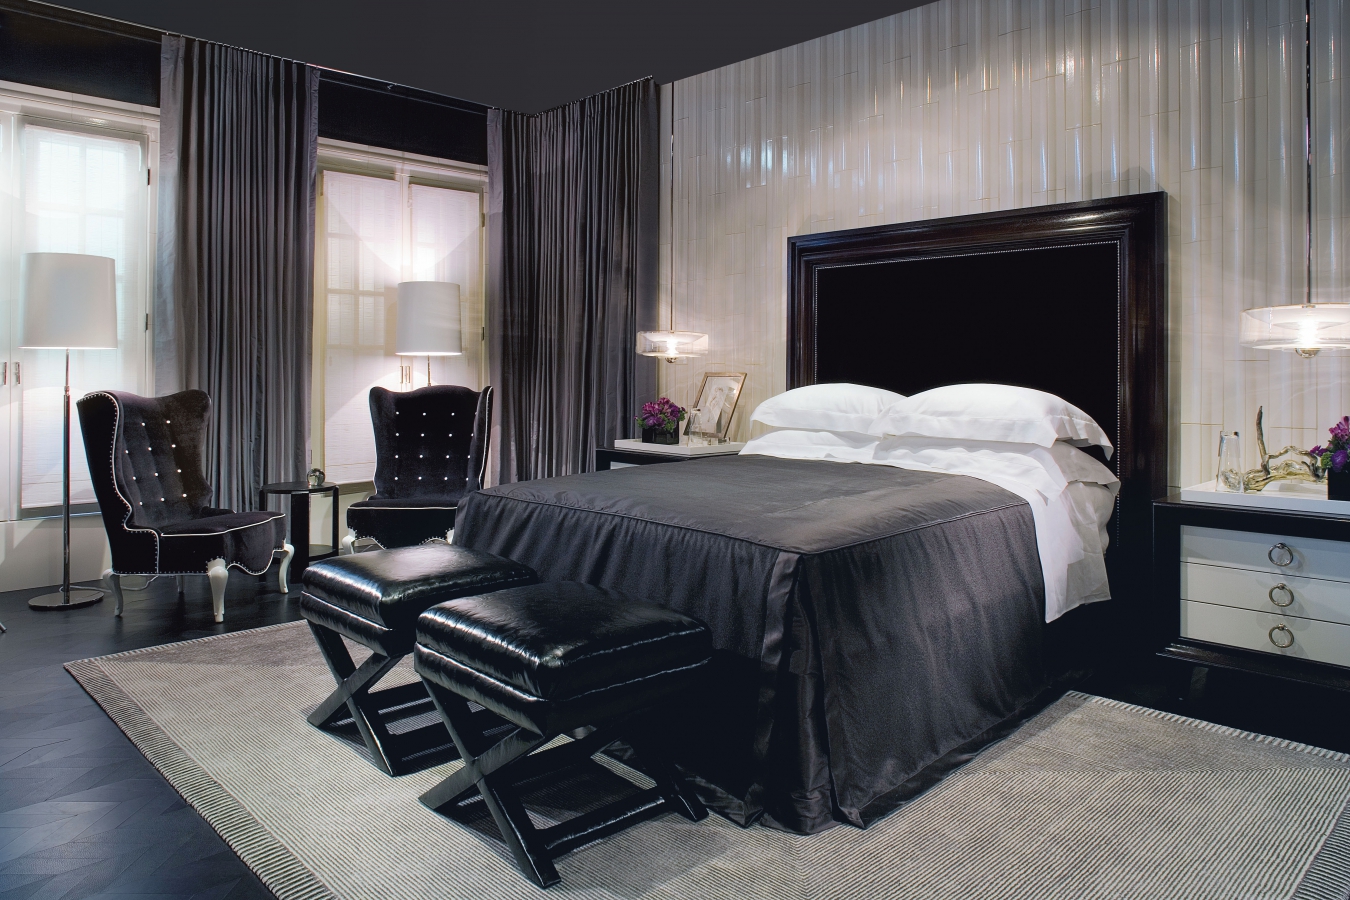 squisito design della camera da letto in nero